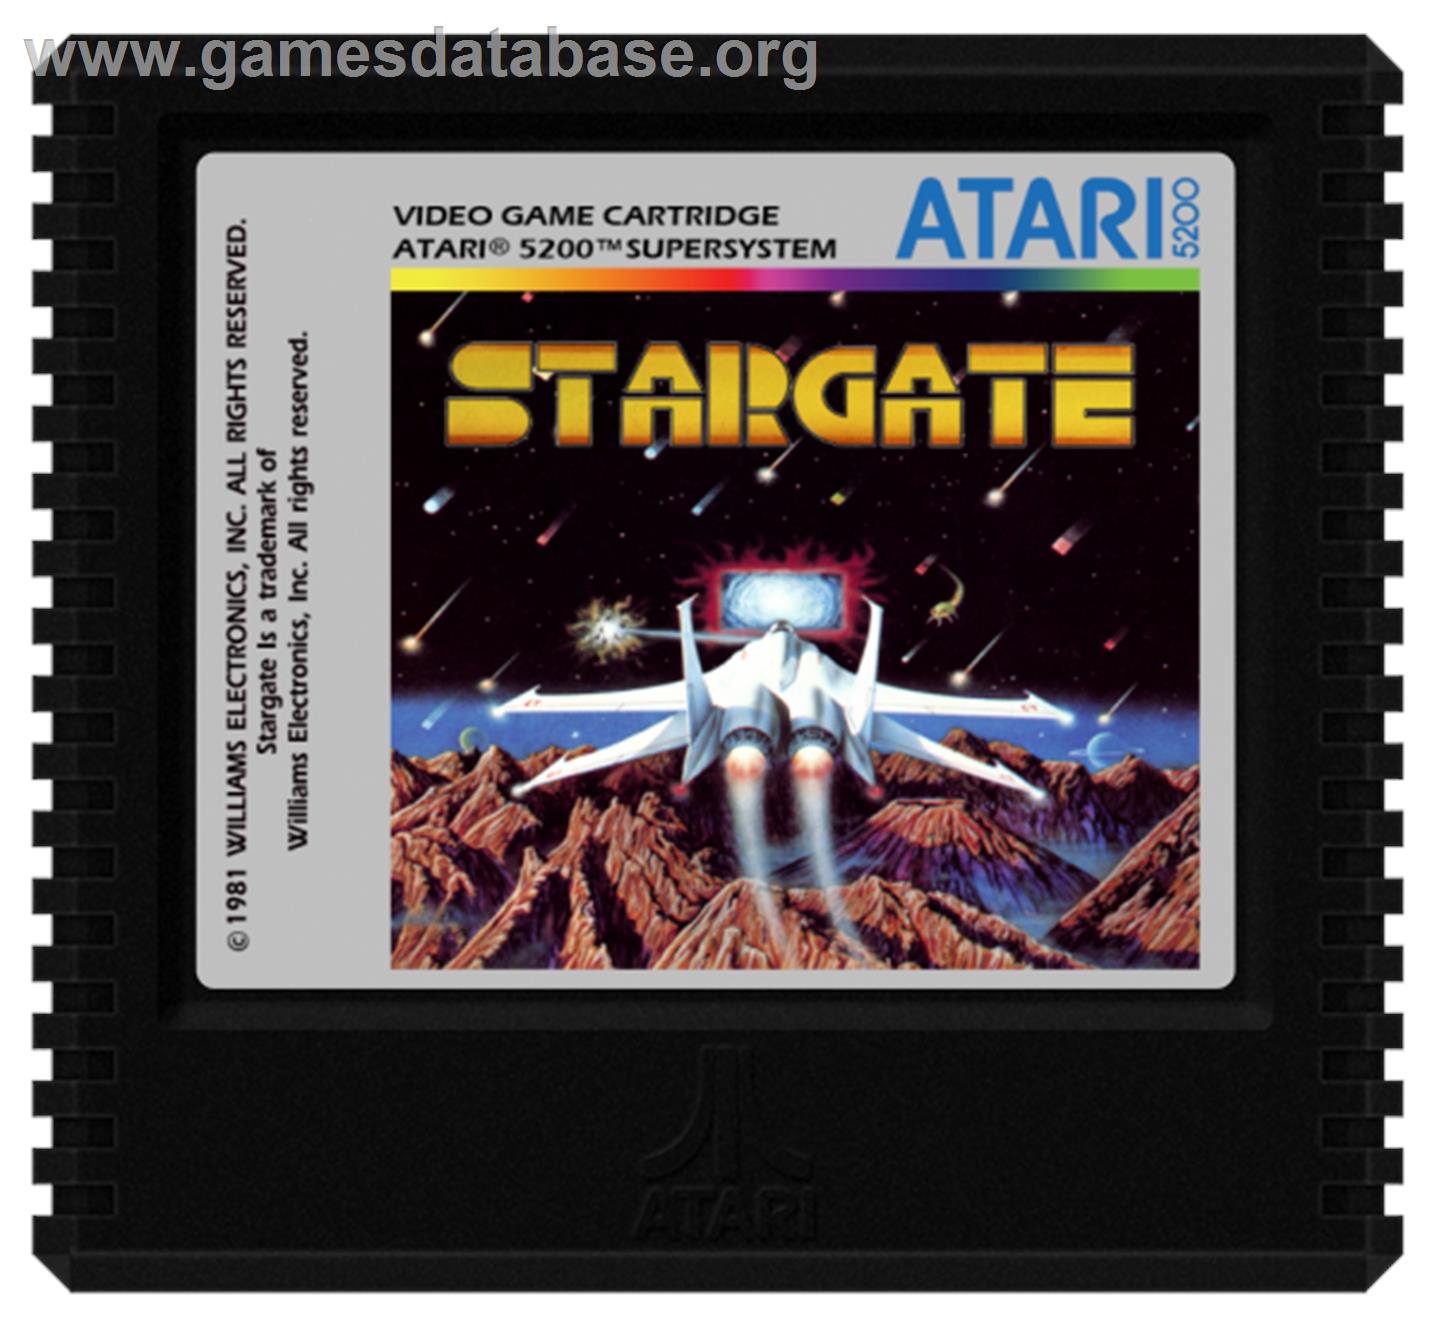 Stargate - Atari 5200 - Artwork - Cartridge